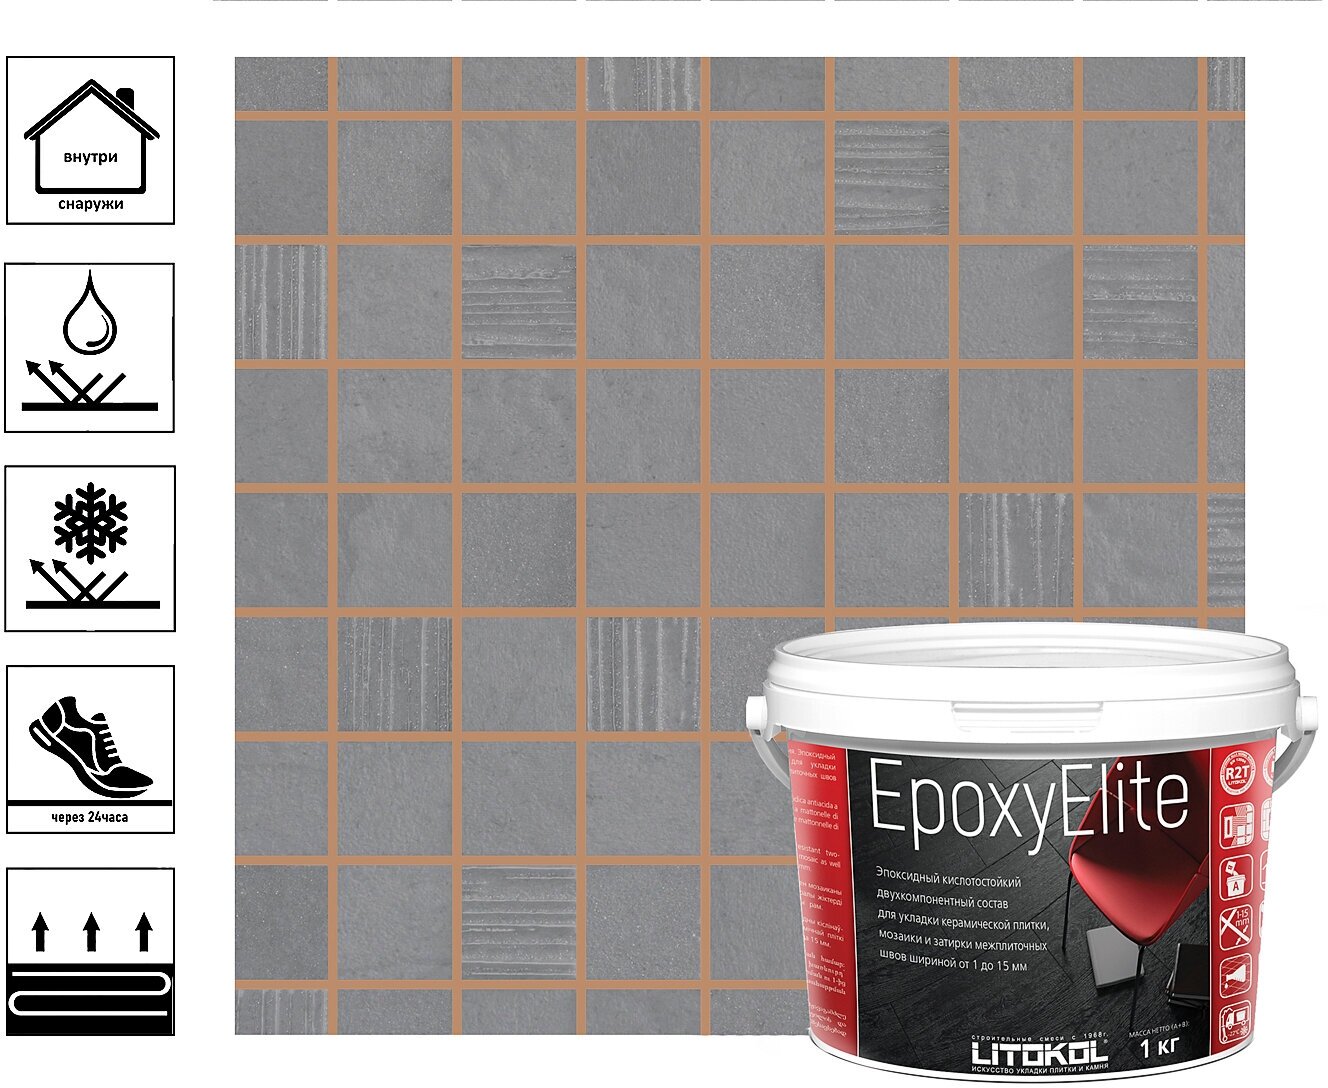 Затирка эпоксидная EpoxyElite для укладки и затирки мозаики и керамической плитки 1 кг, лесной орех